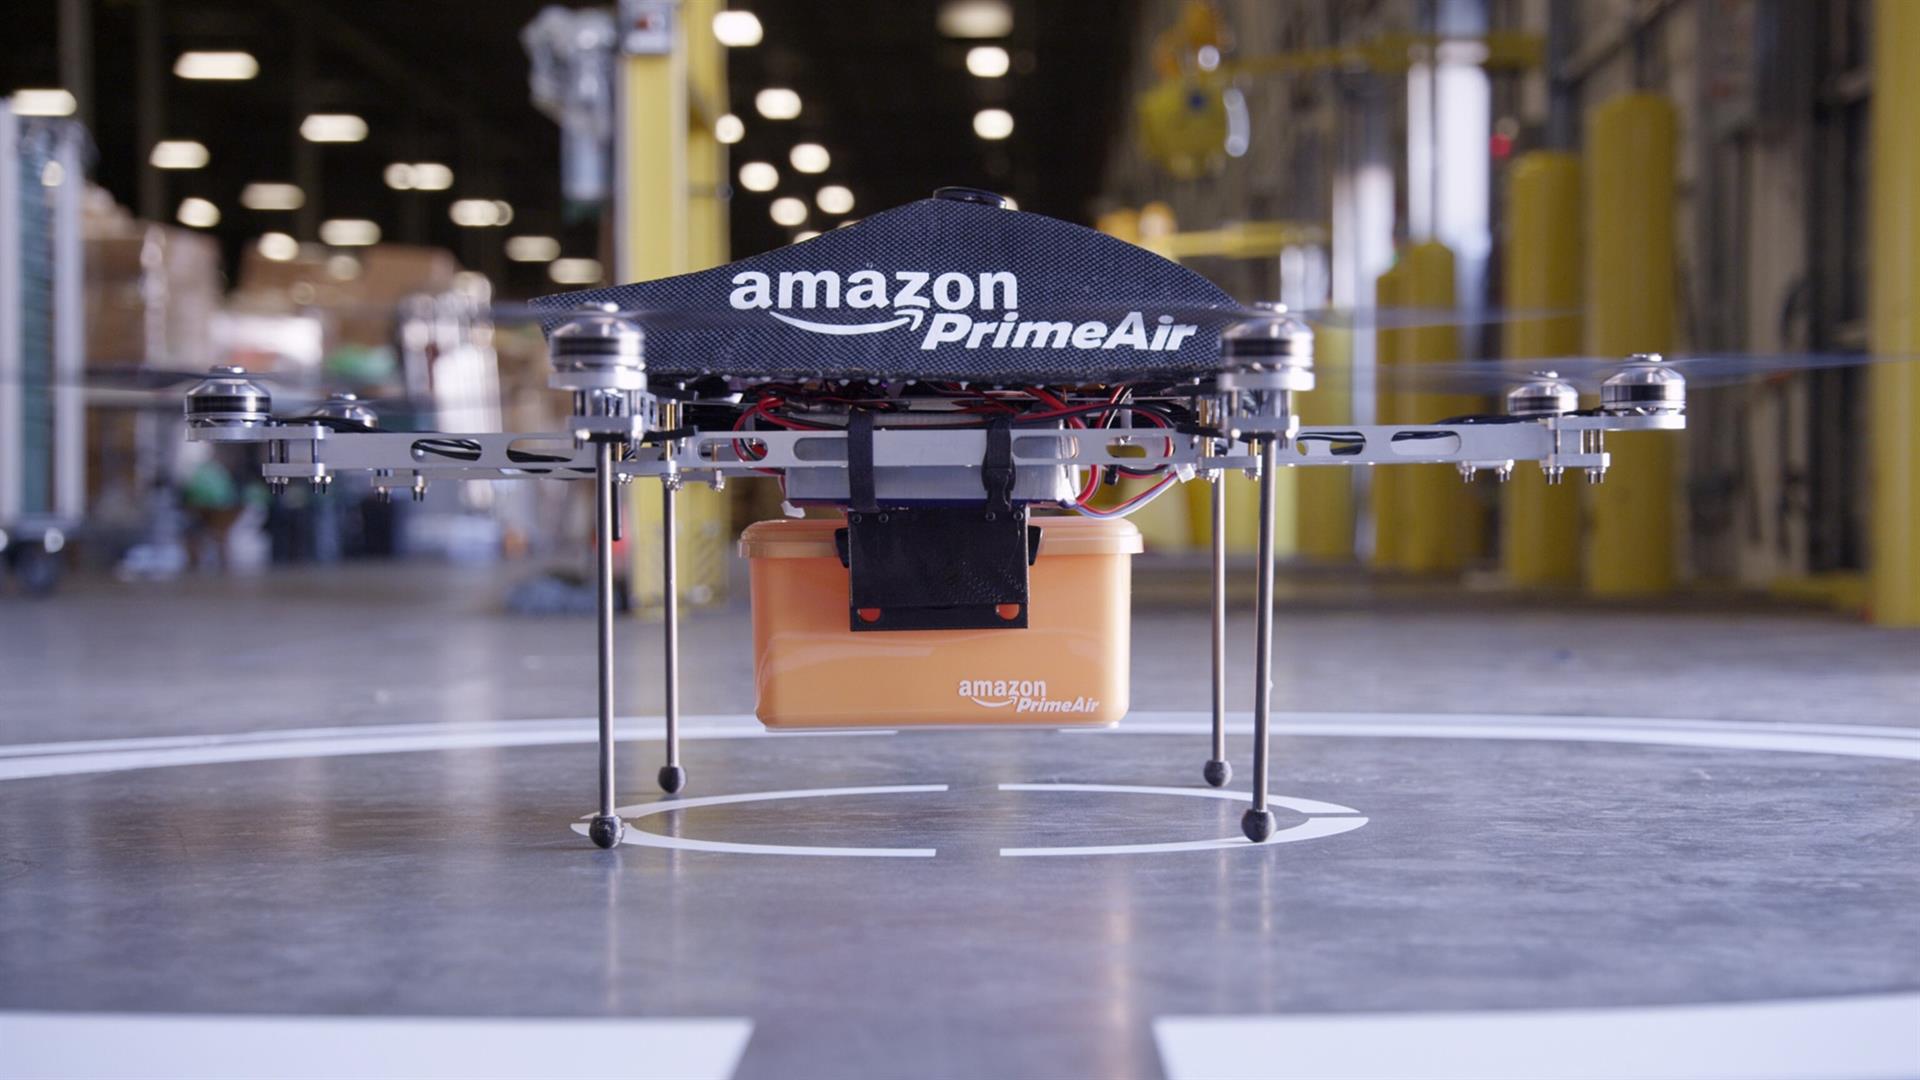 Pedidos de Amazon llegarán en drones este año en California